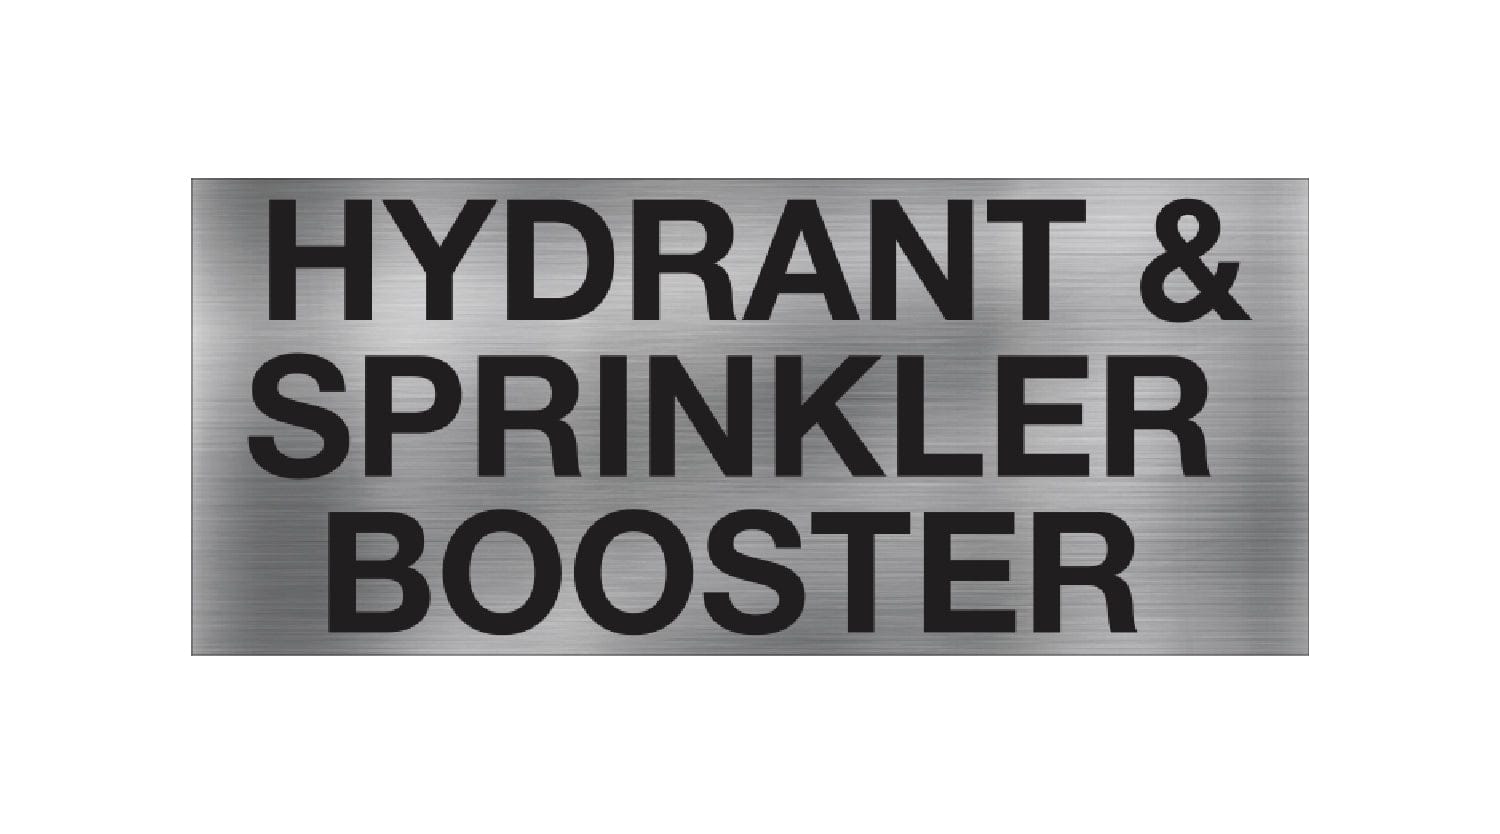 Hydrant &#038; Sprinkler Booster Sign